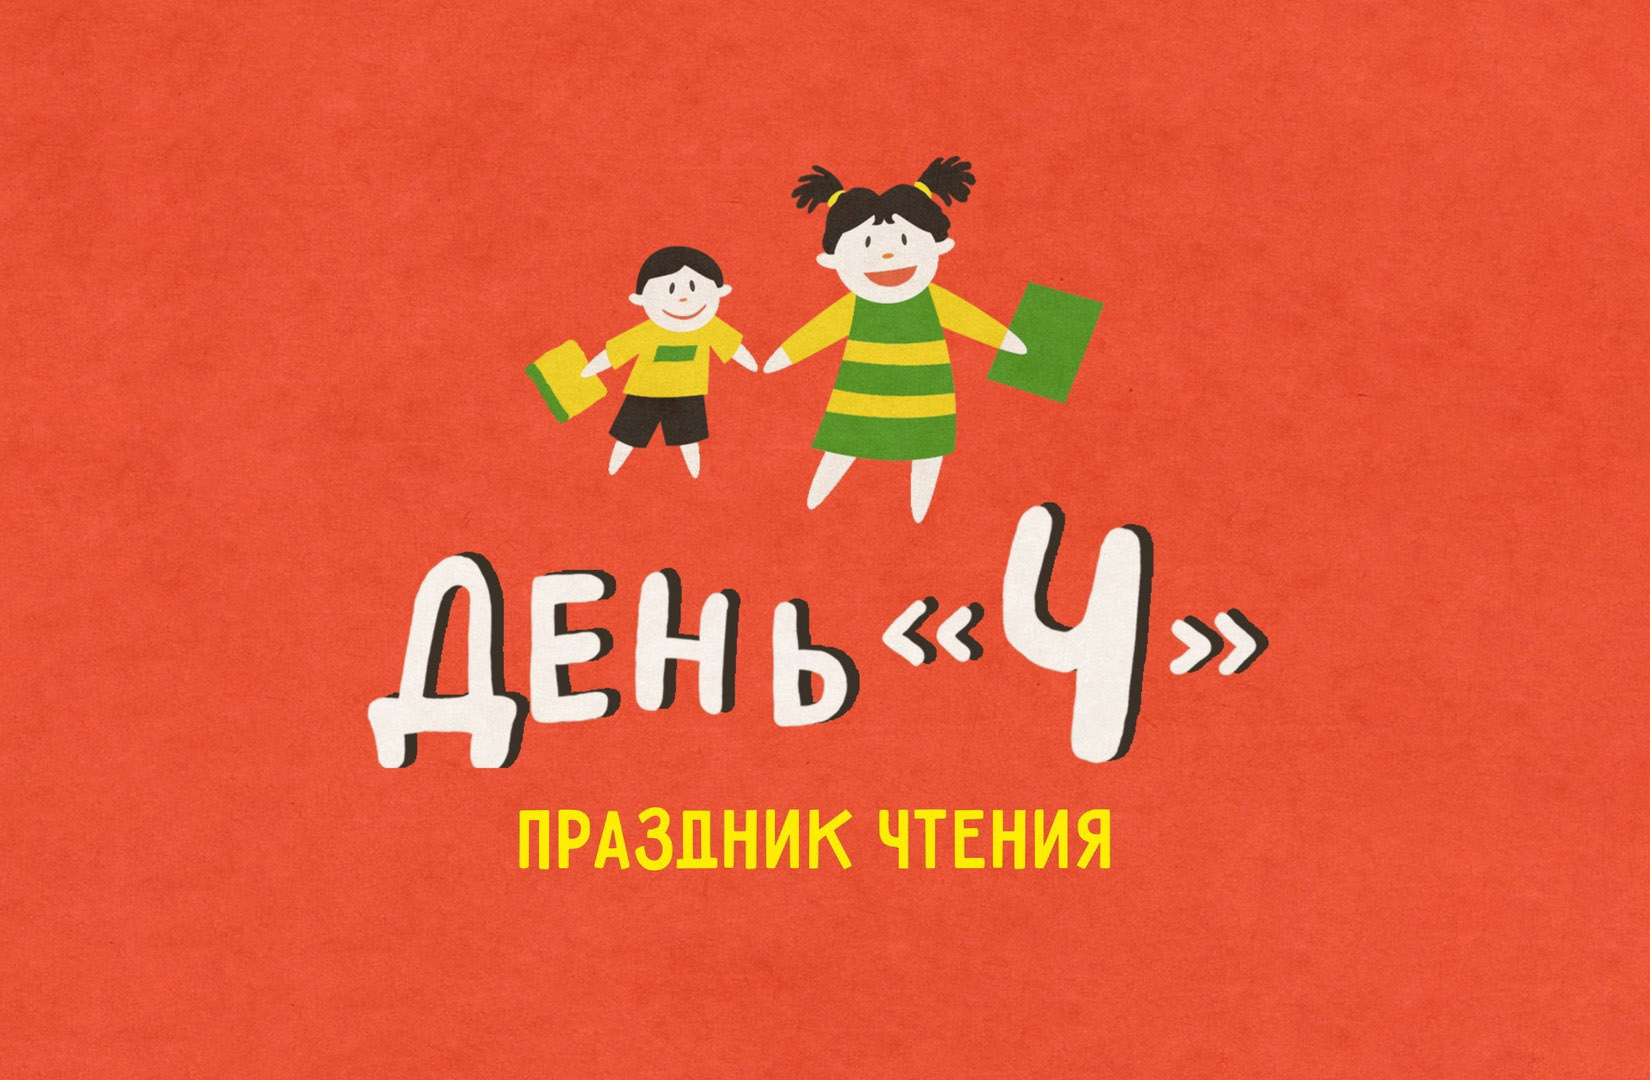 Праздник «День Ч» пройдет в Иркутске с 1 по 7 июня